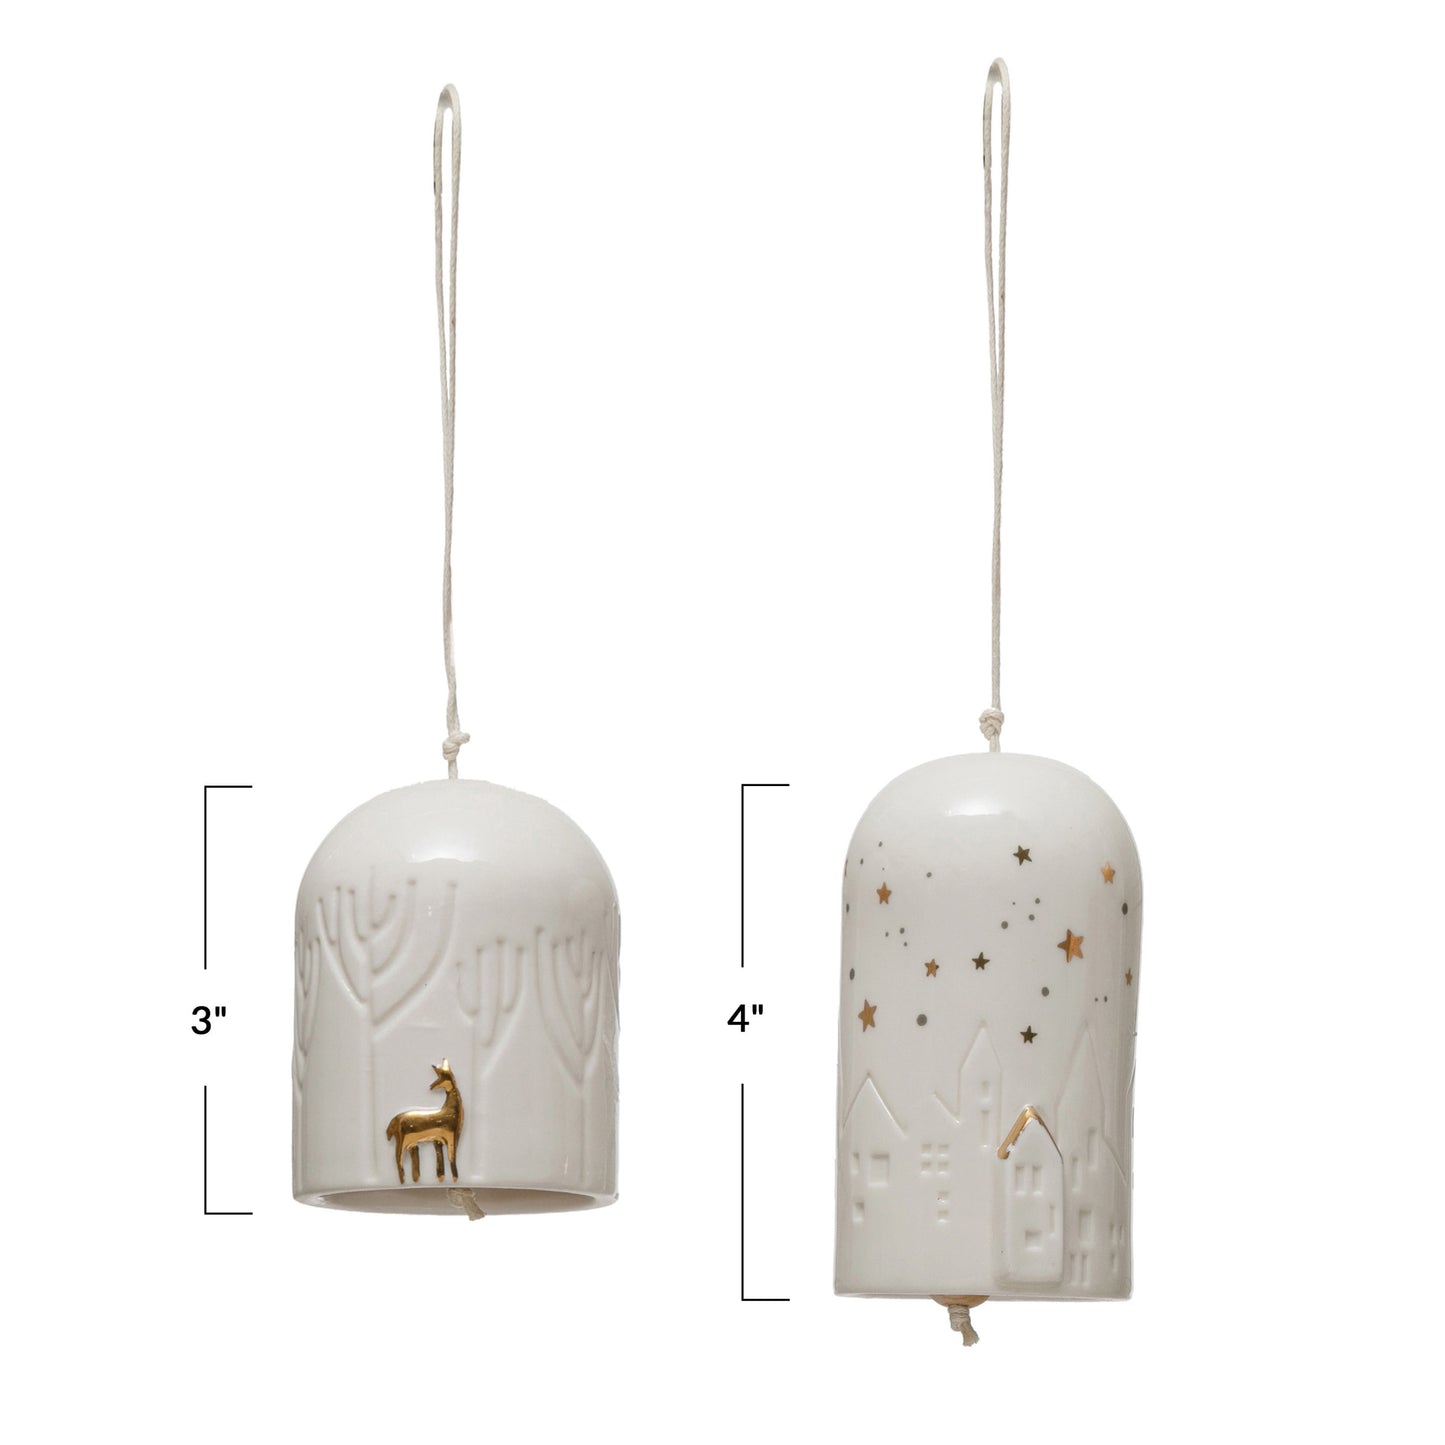 Porcelain Bell Ornaments with Village/Deer